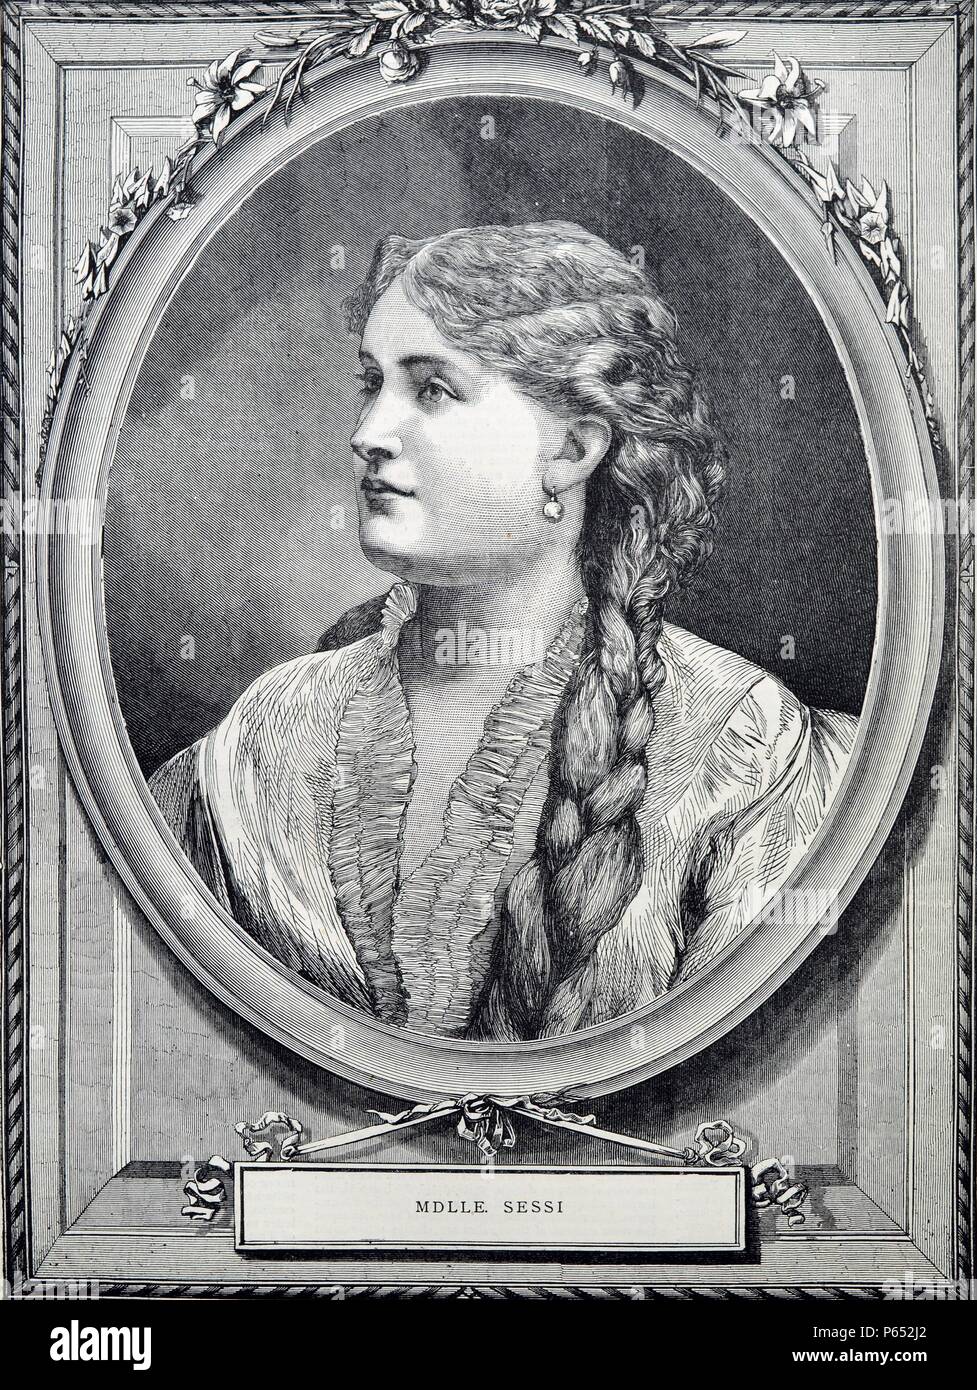 Gravure de Mathilde Sessi une chanteuse d'opéra français actif pendant le 19ème siècle. Datée 1870 Banque D'Images